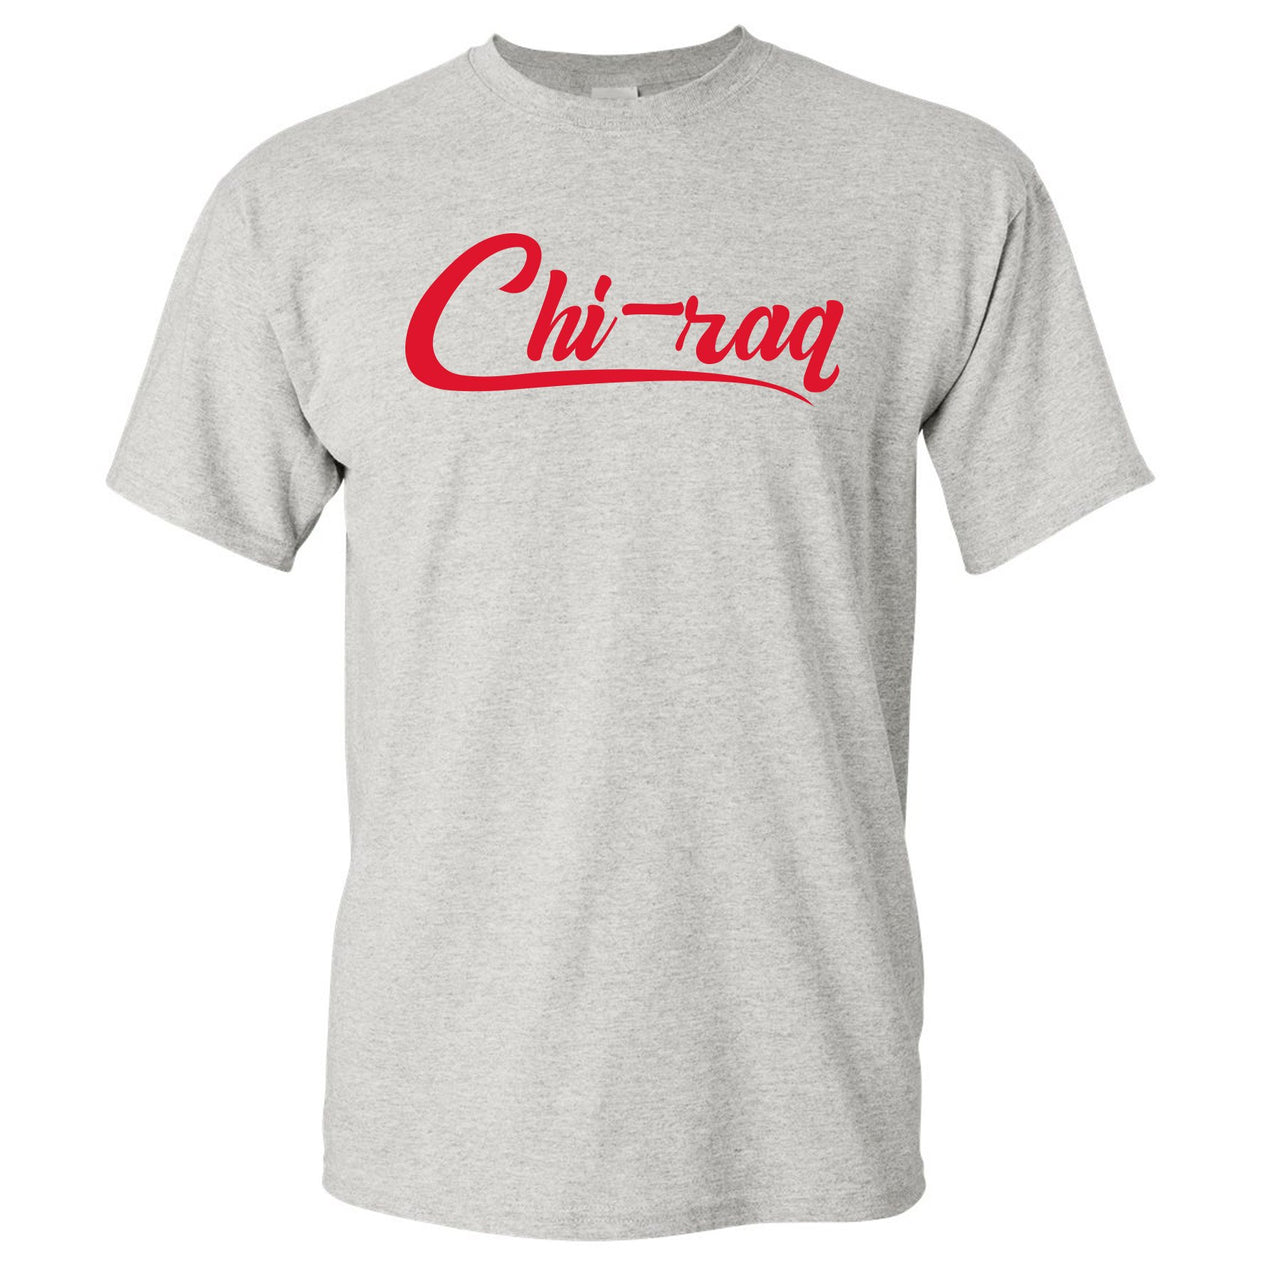 Bred 2019 4s T Shirt | Chiraq, Gray